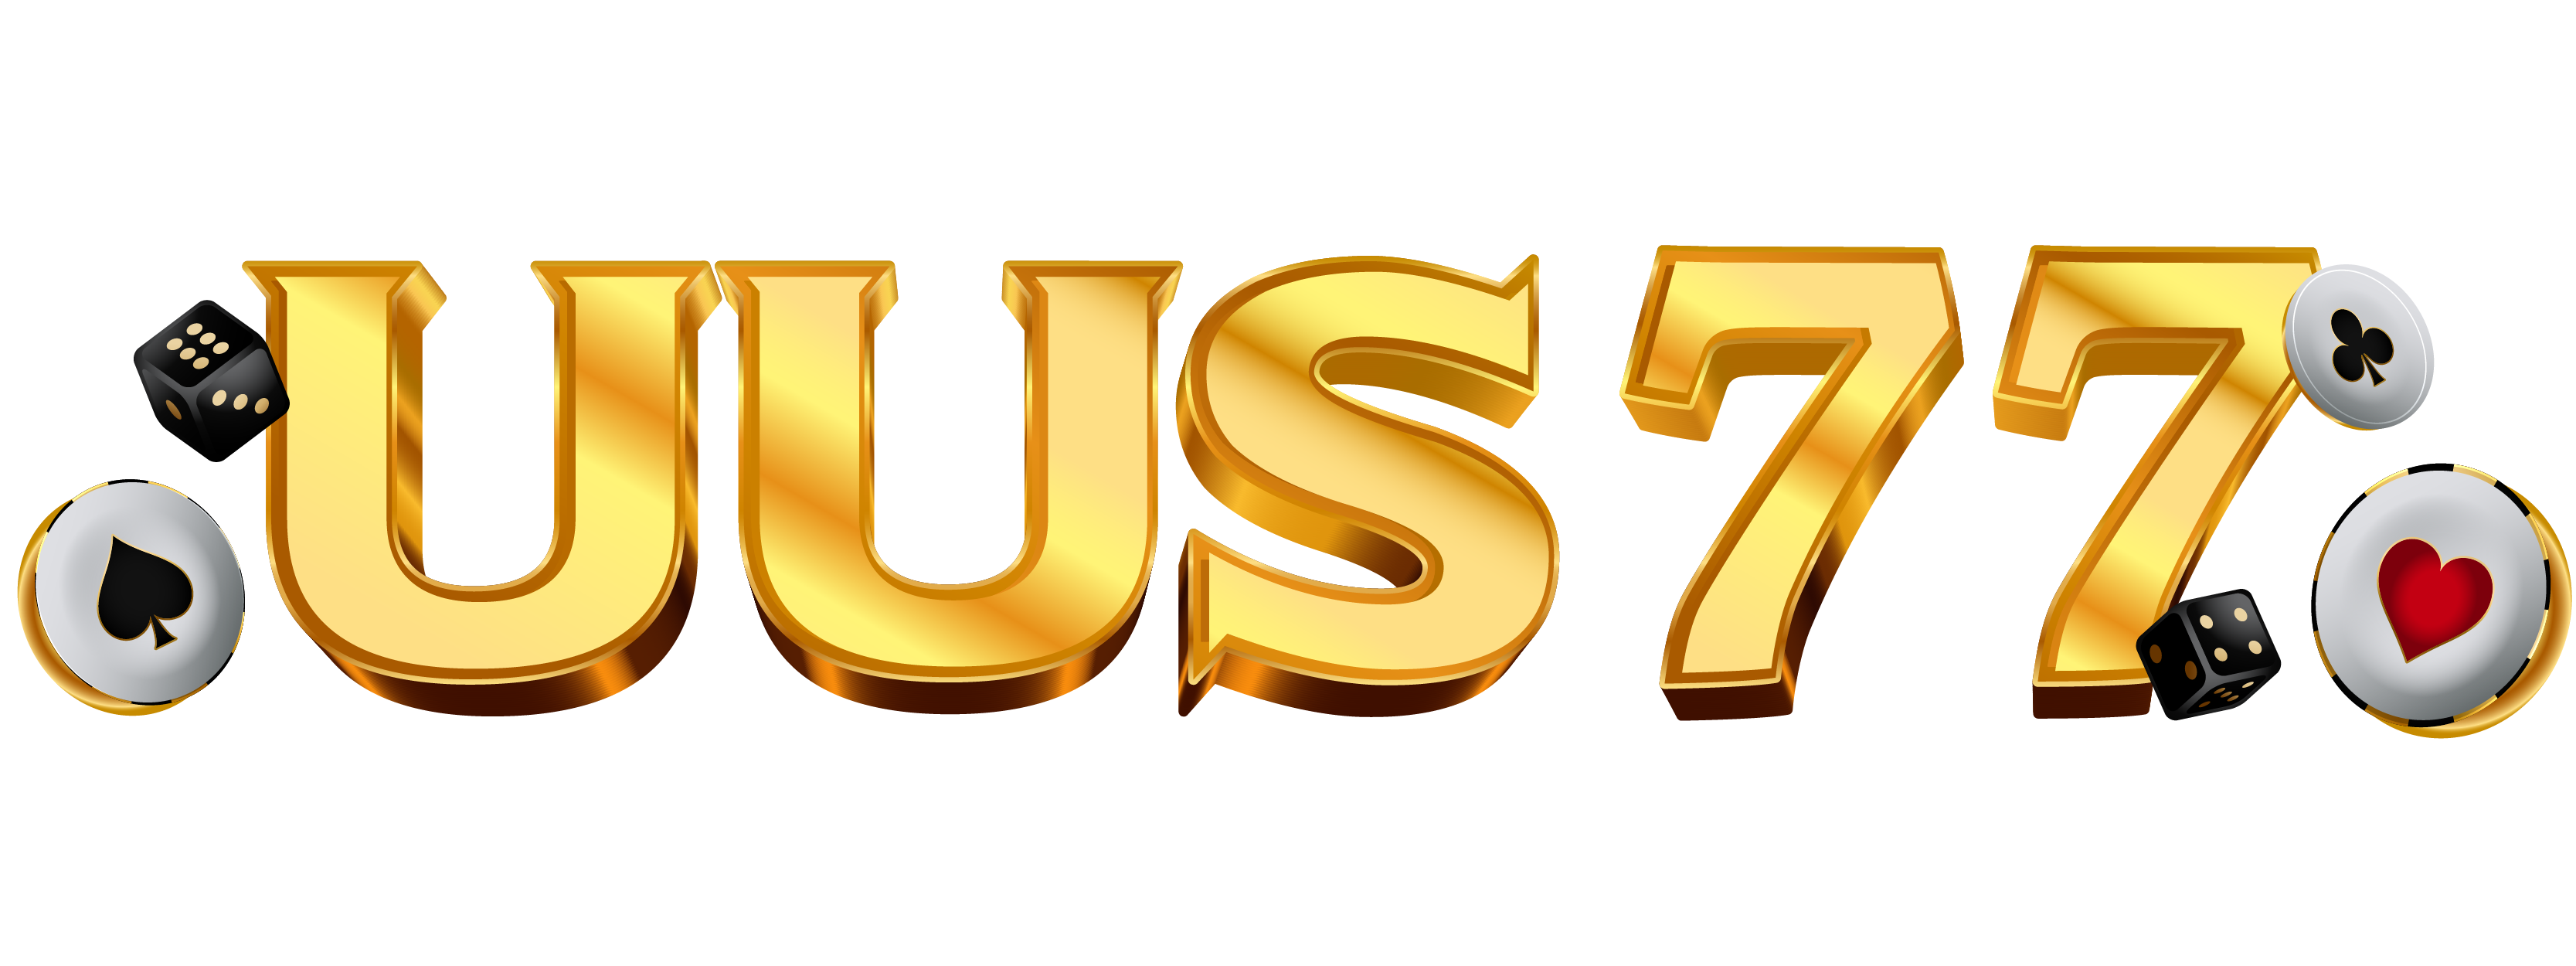 Uus77